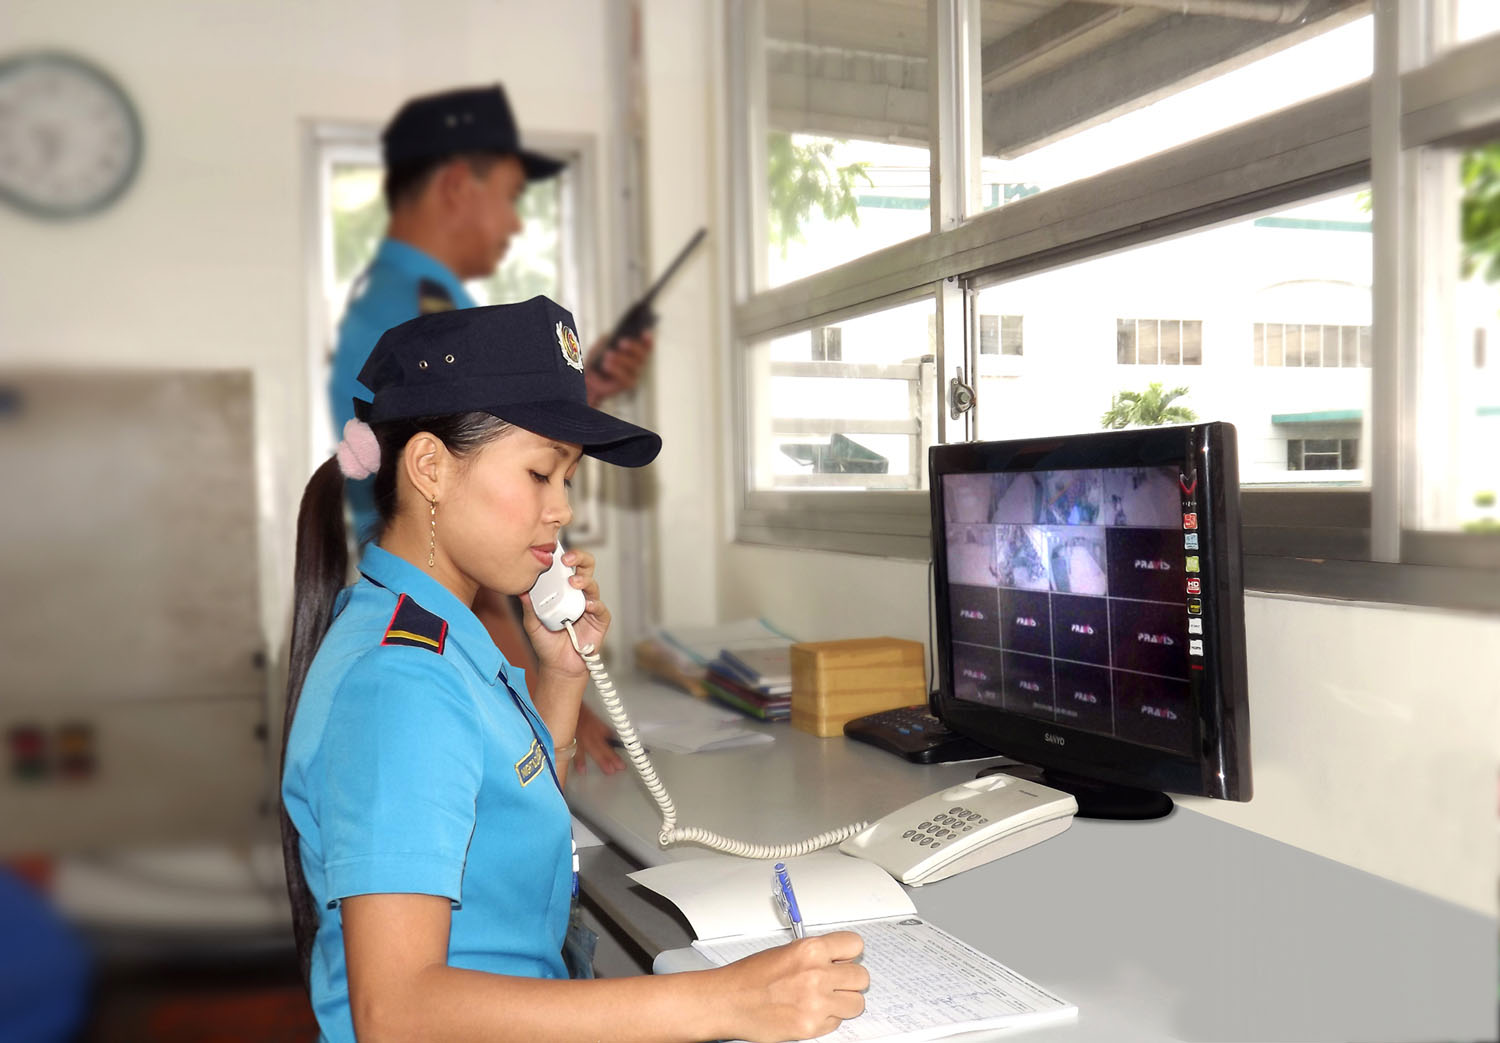 Thuê bảo vệ tại Đà Nẵng liệu có an toàn